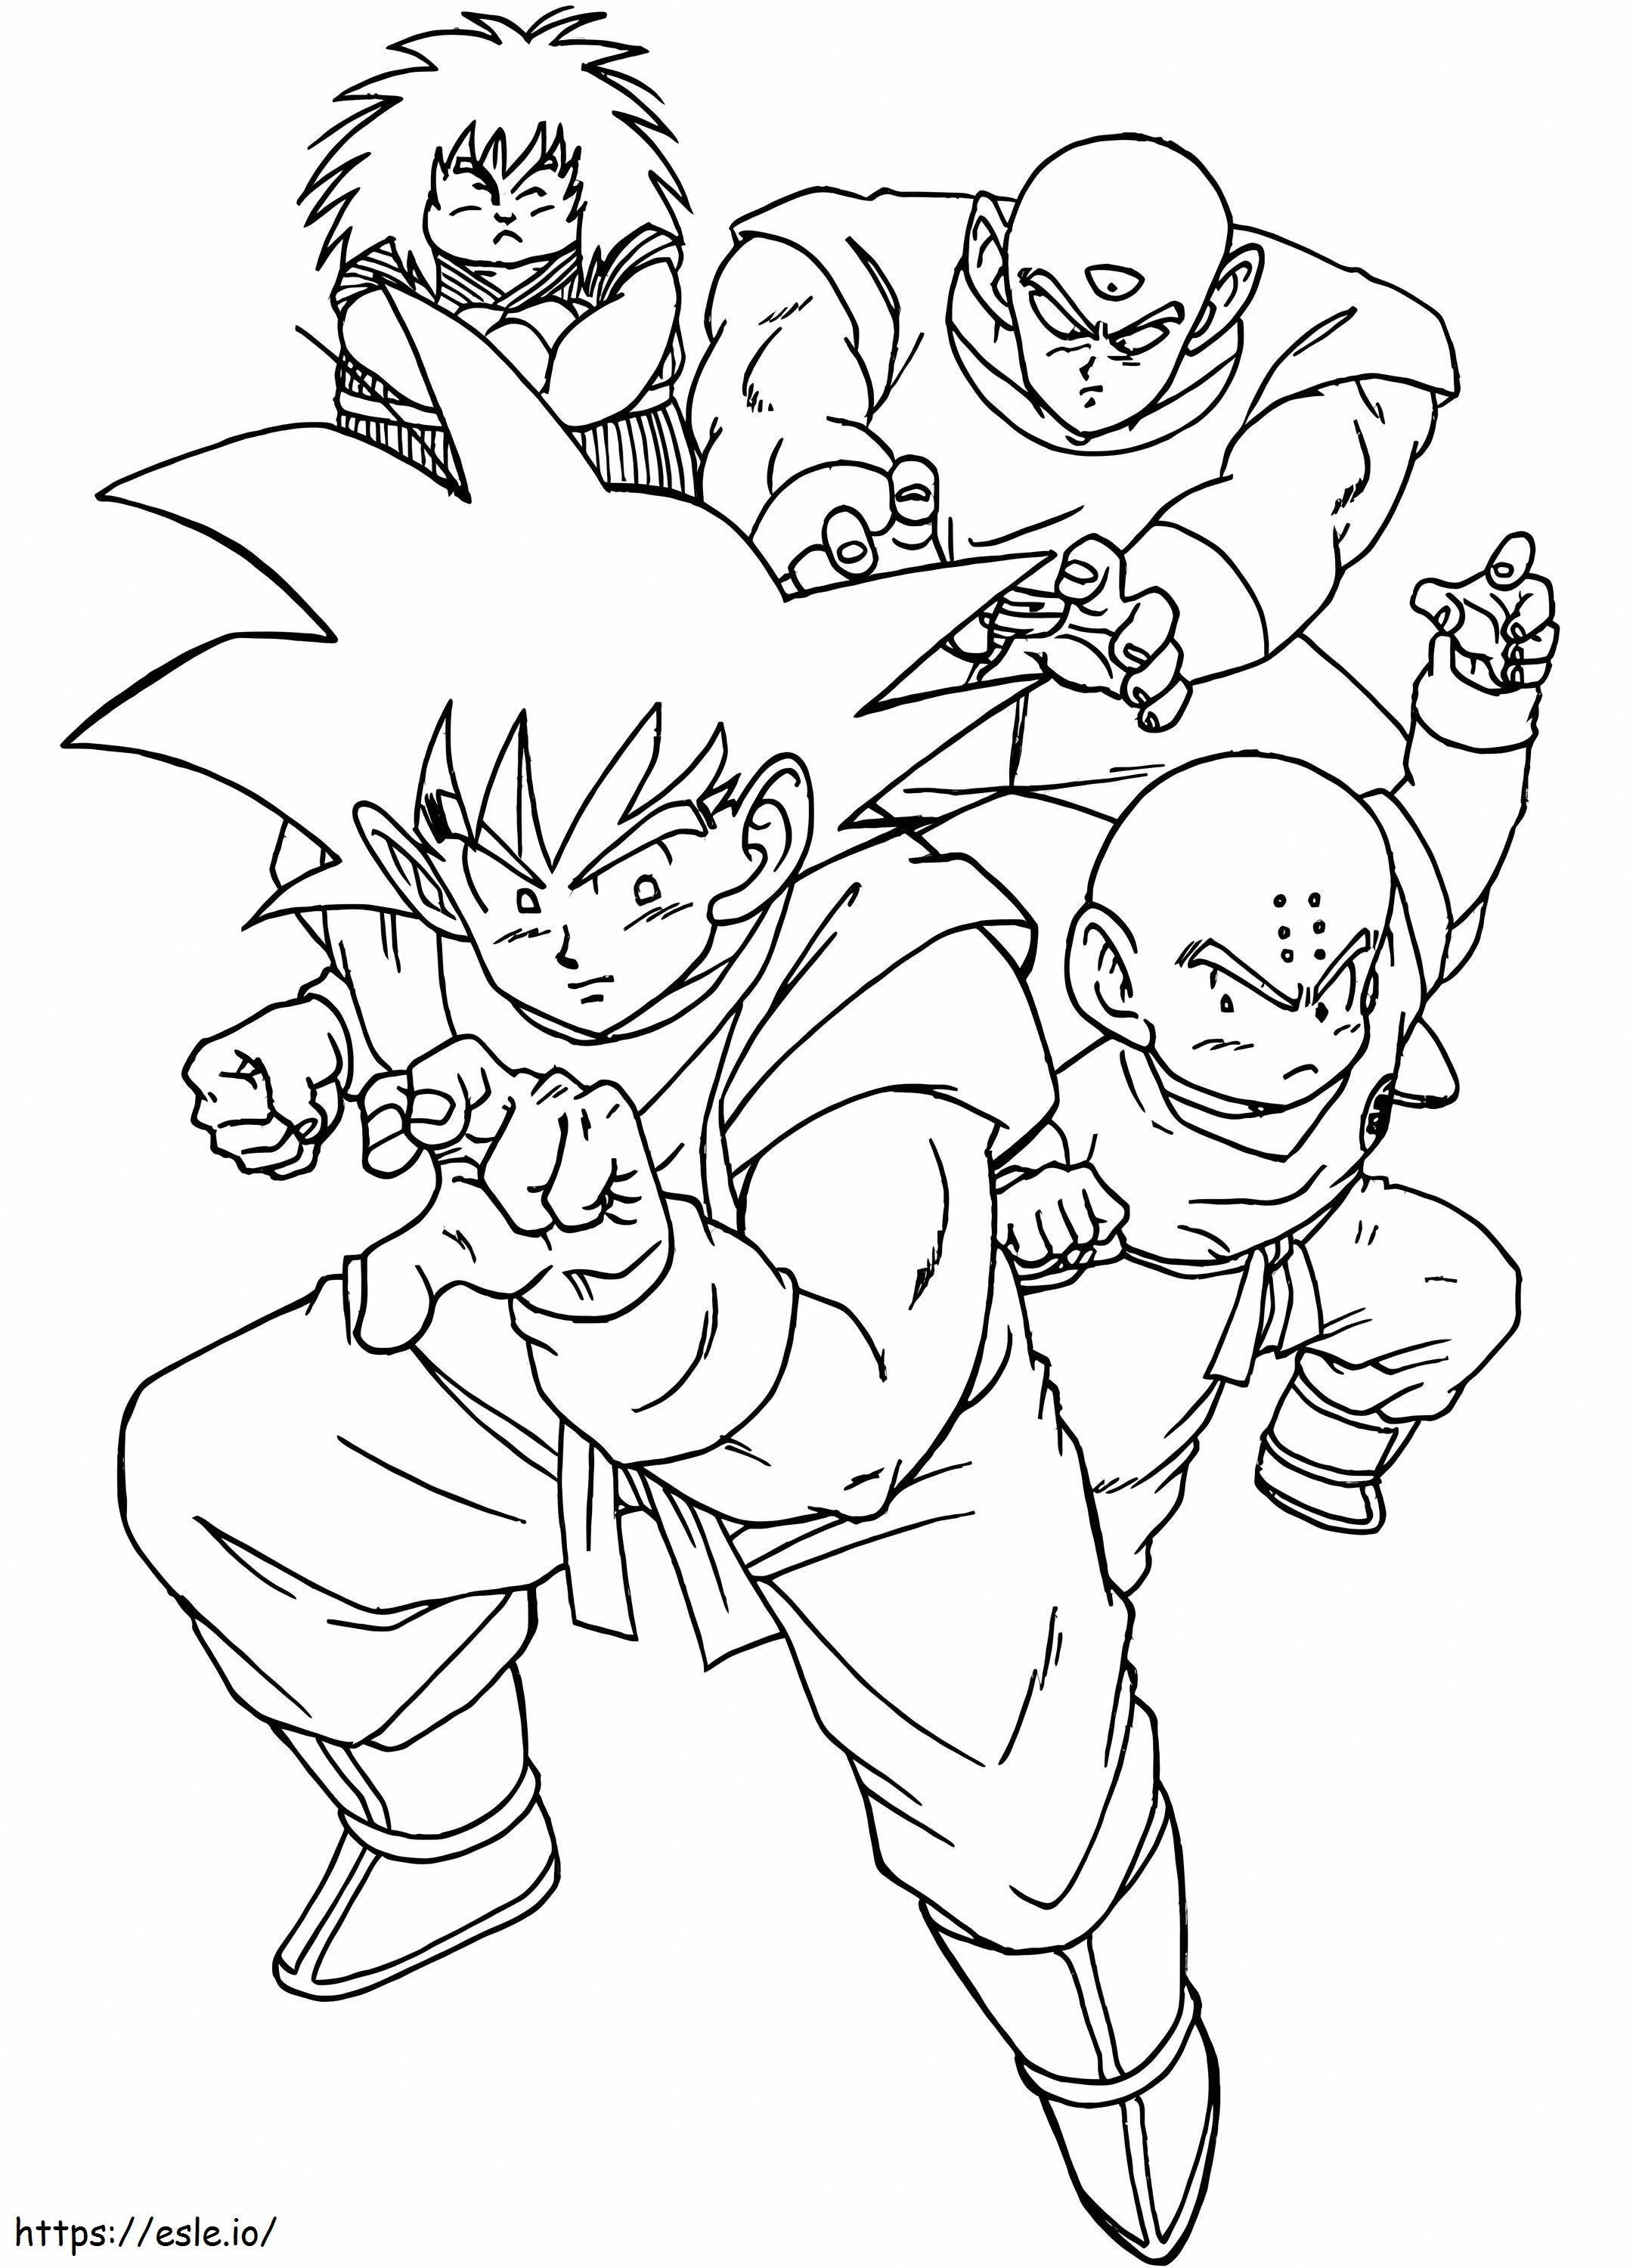 Goku und Freunde ausmalbilder